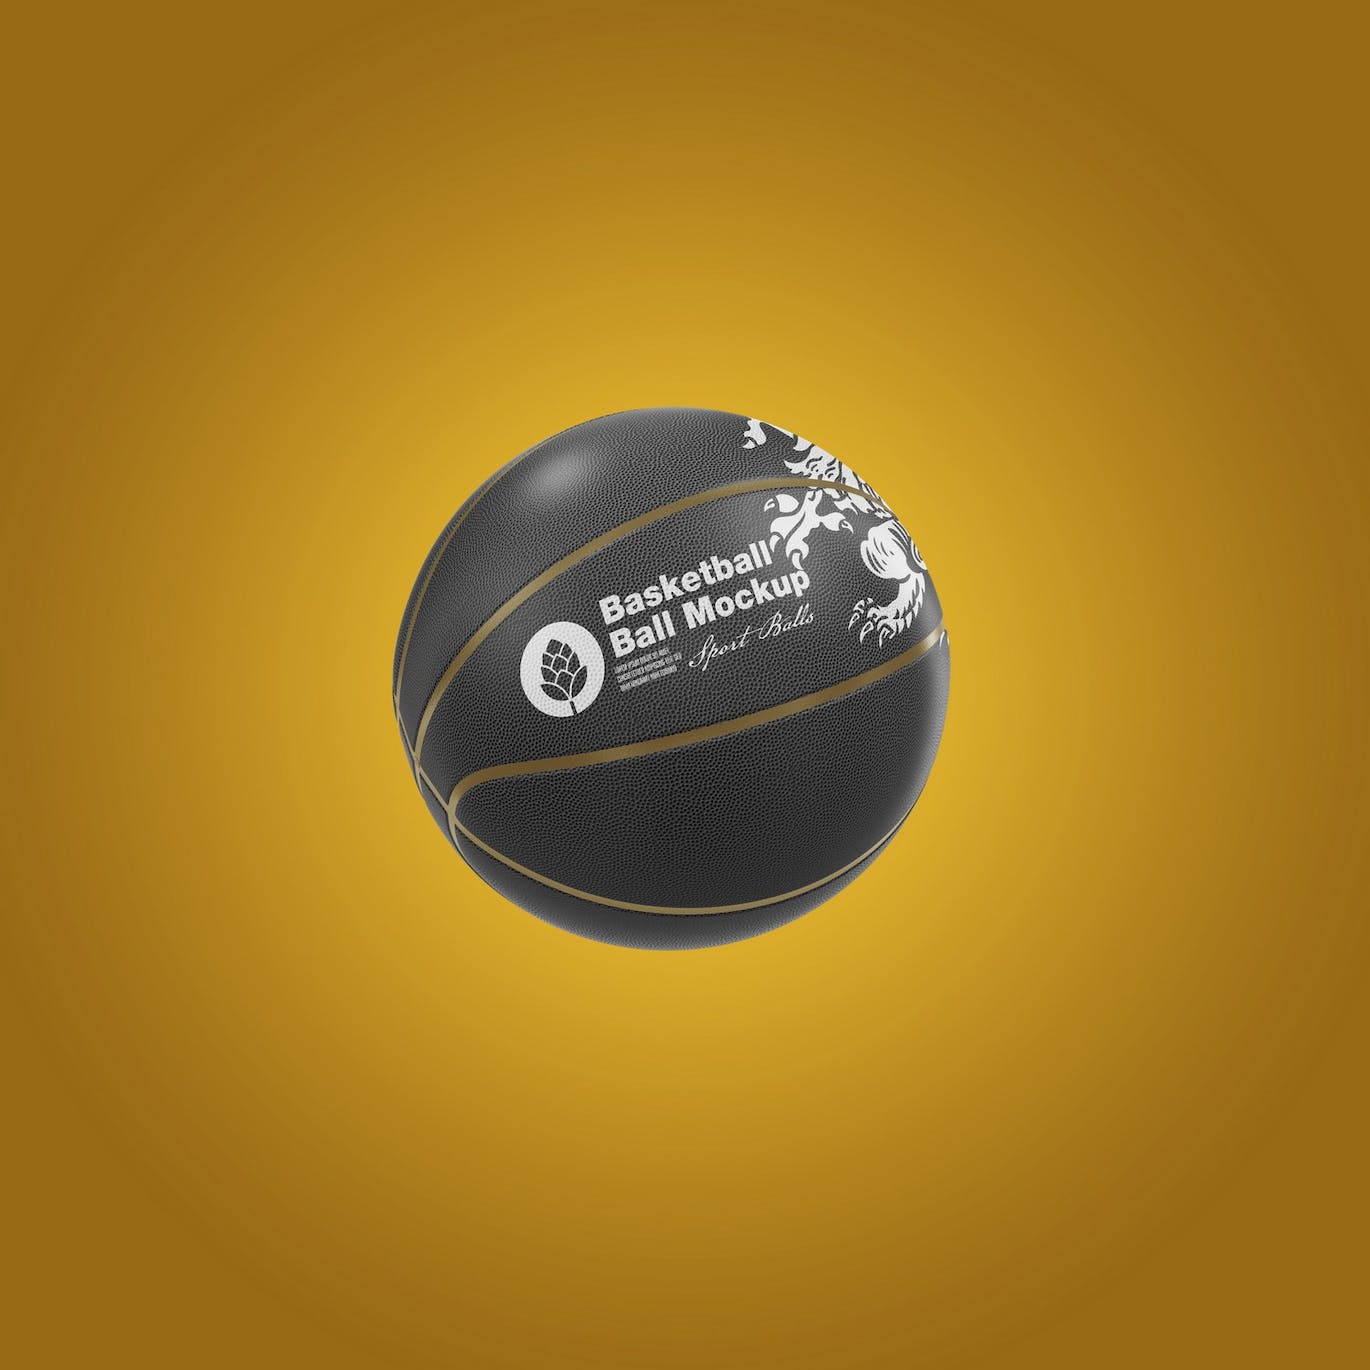 篮球运动品牌设计样机 Basketball Ball Mockup 样机素材 第10张